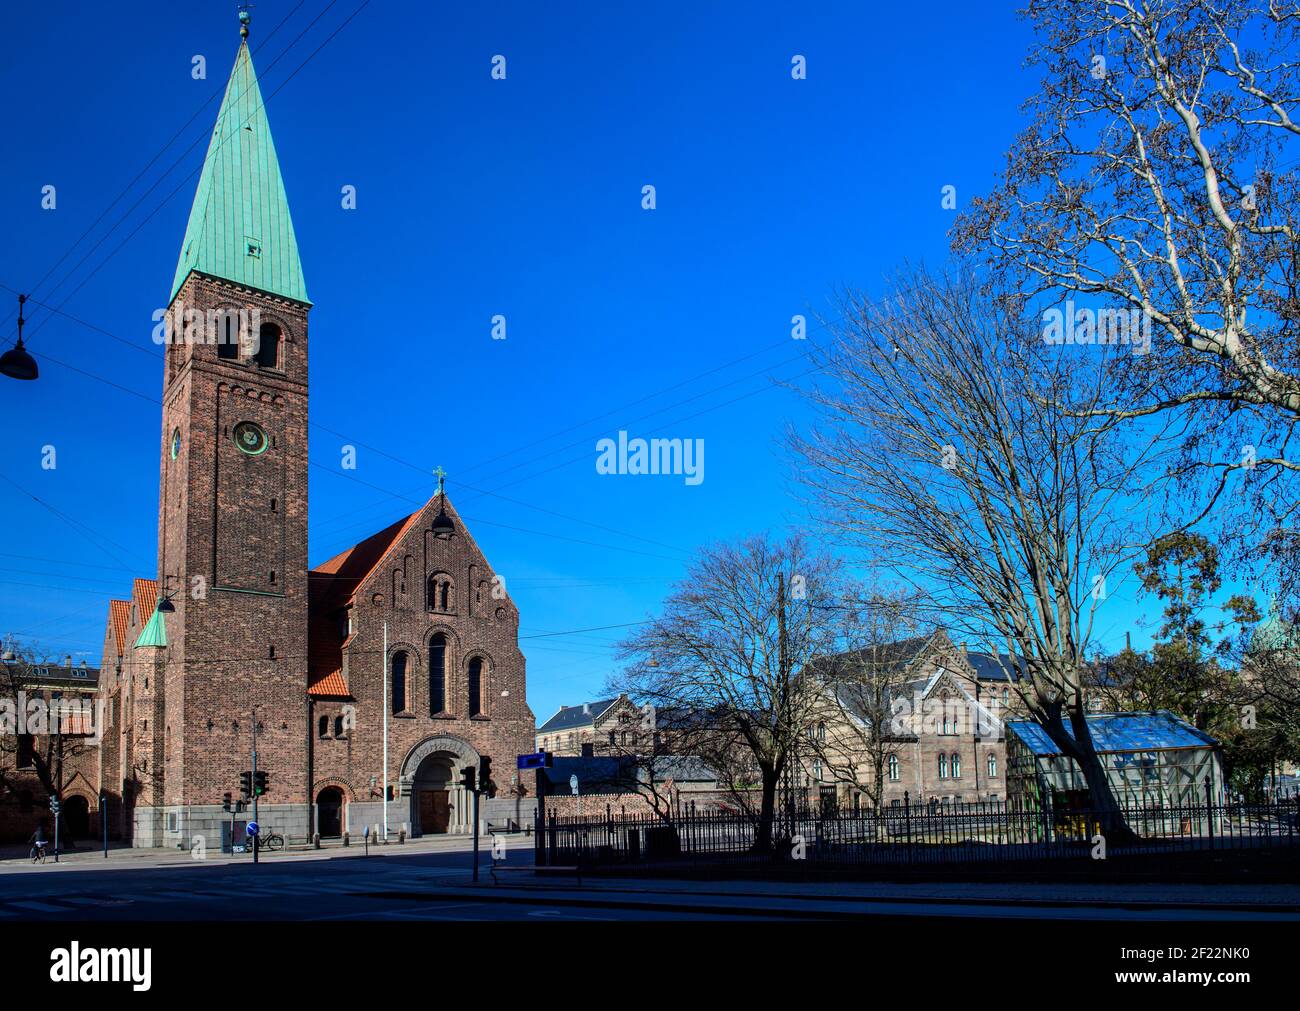 St. Andrew's Church (Skt. Andreas Kirke / Sankt Andreas Kirke) ist eine lutherische Kirche an der Gothersgade in Kopenhagen, Dänemark, die von der A entworfen wurde Stockfoto